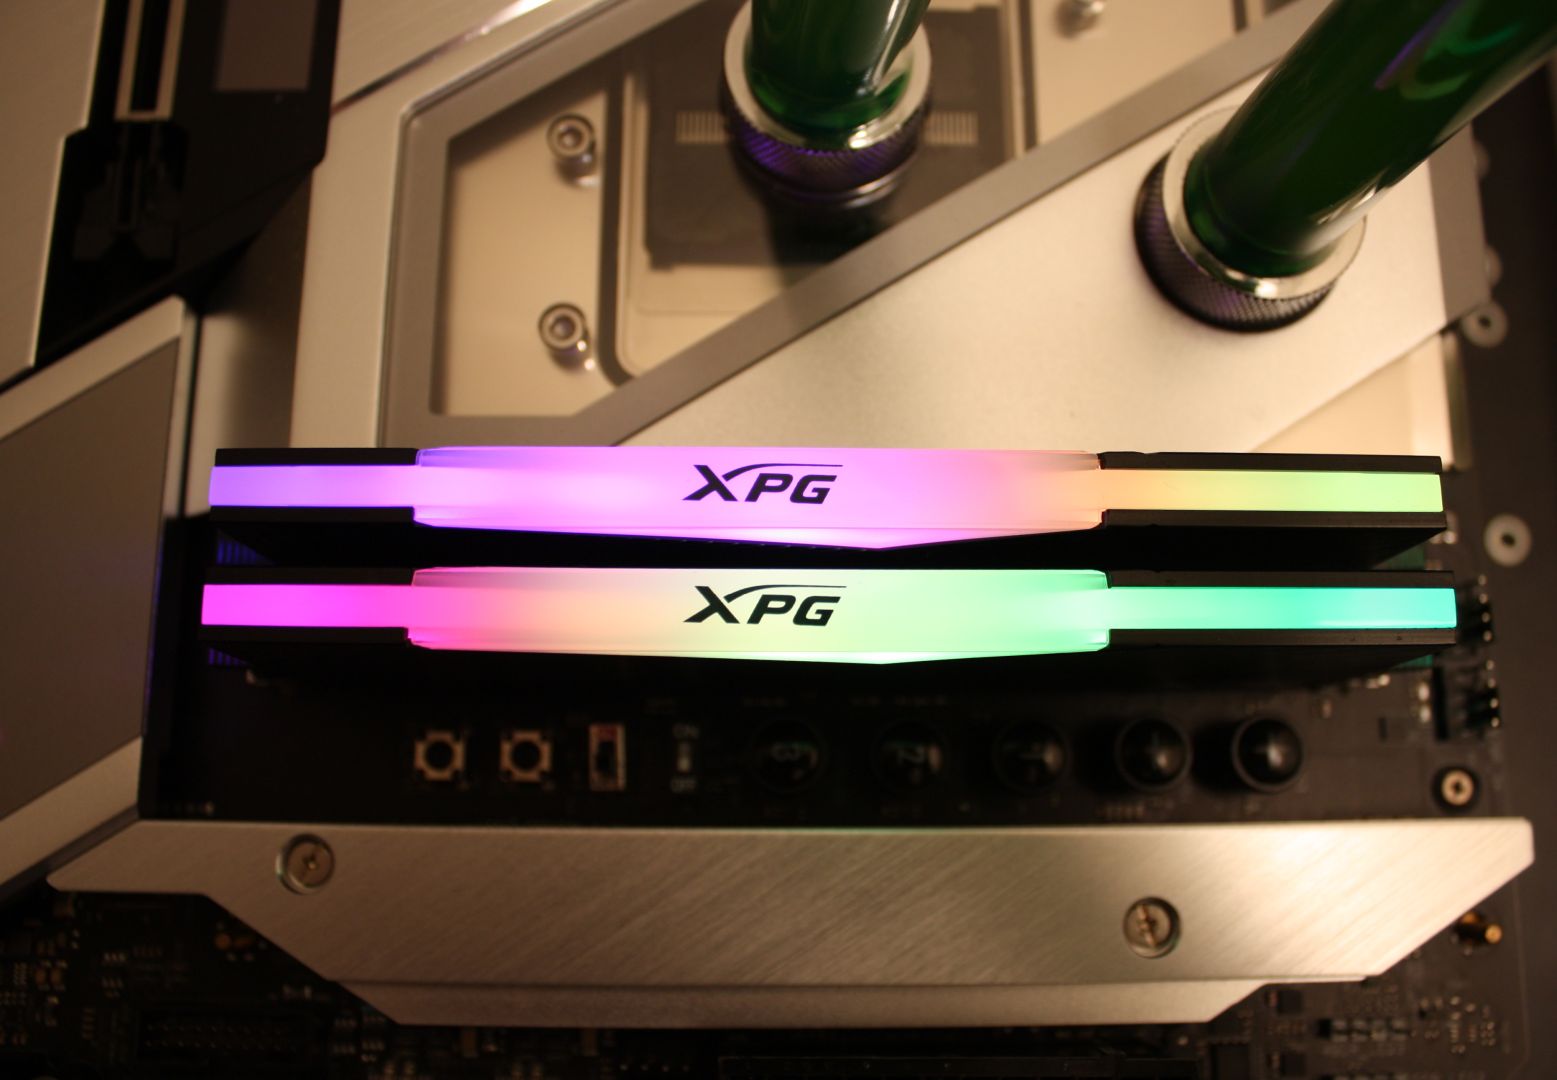 XPG Lancer RGB DDR5-6000 32GB Dual-Channel Memory Kit Review